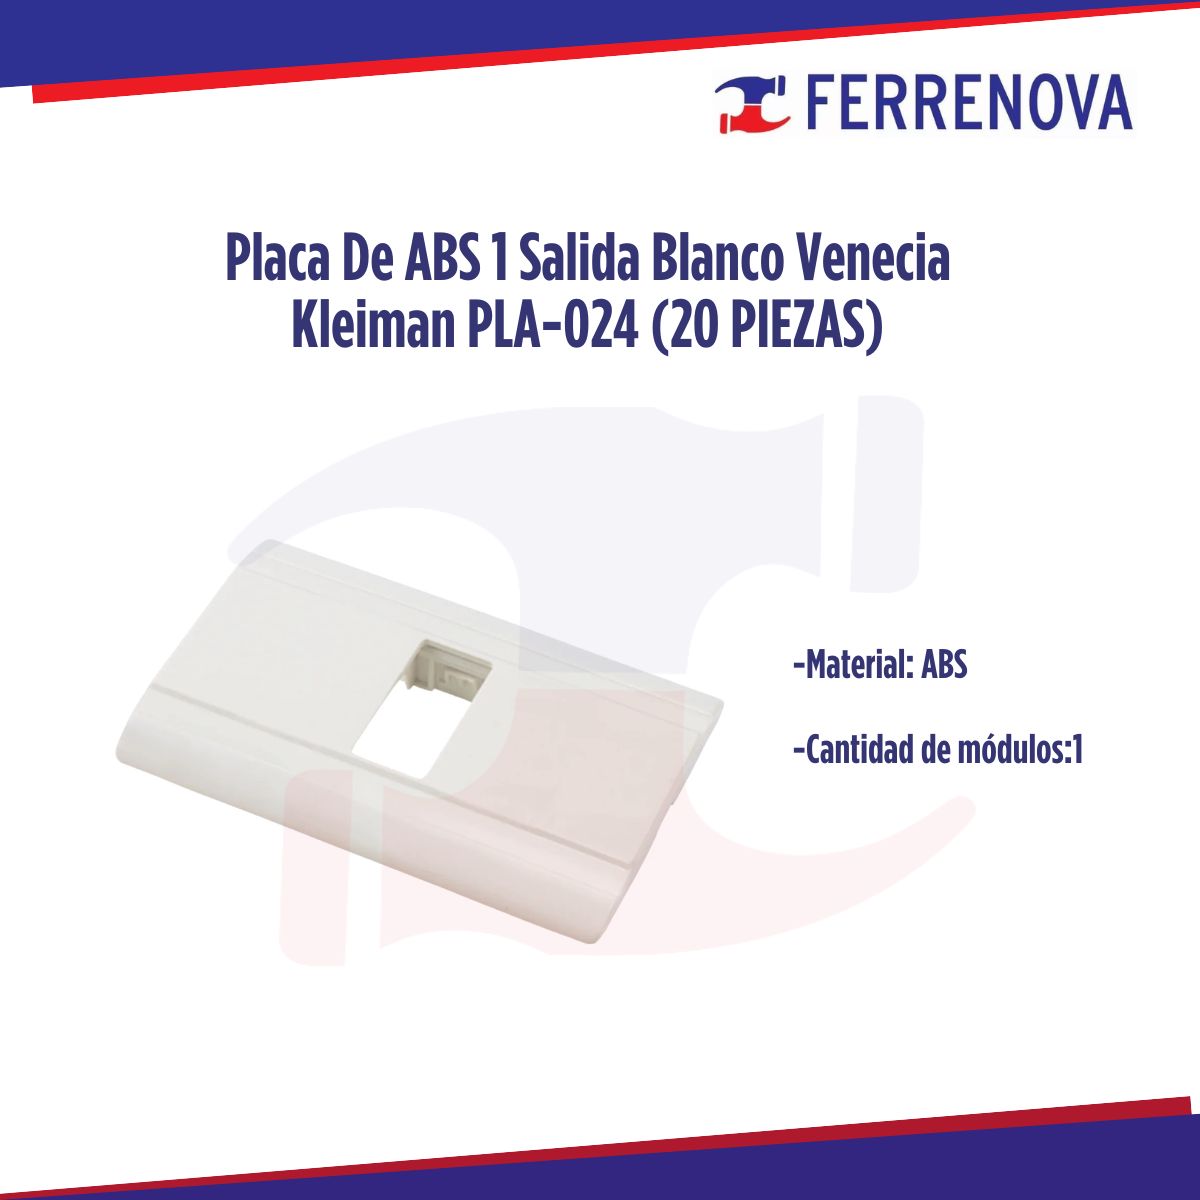 Placa De ABS 1 Salida Blanco Venecia Kleiman PLA-024 (20 PIEZAS)